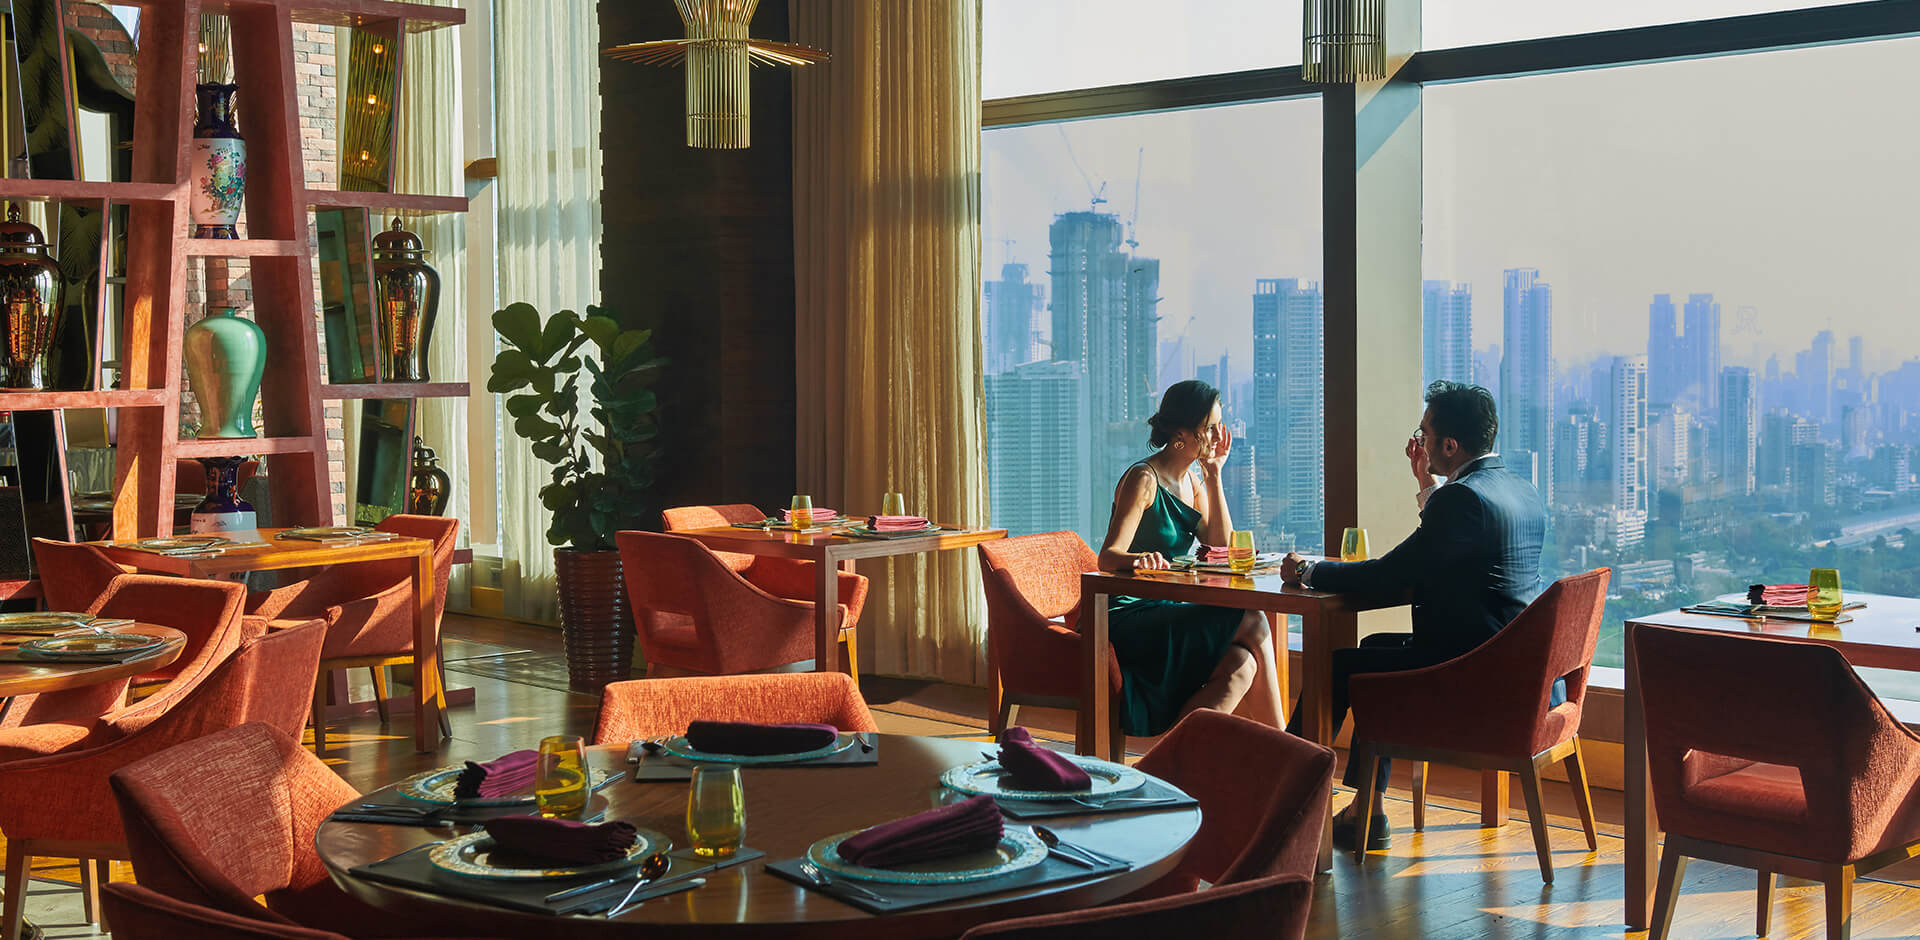 By The Mekong Penthouse St Regis | Best Pan Asian Restaurant Mumbai